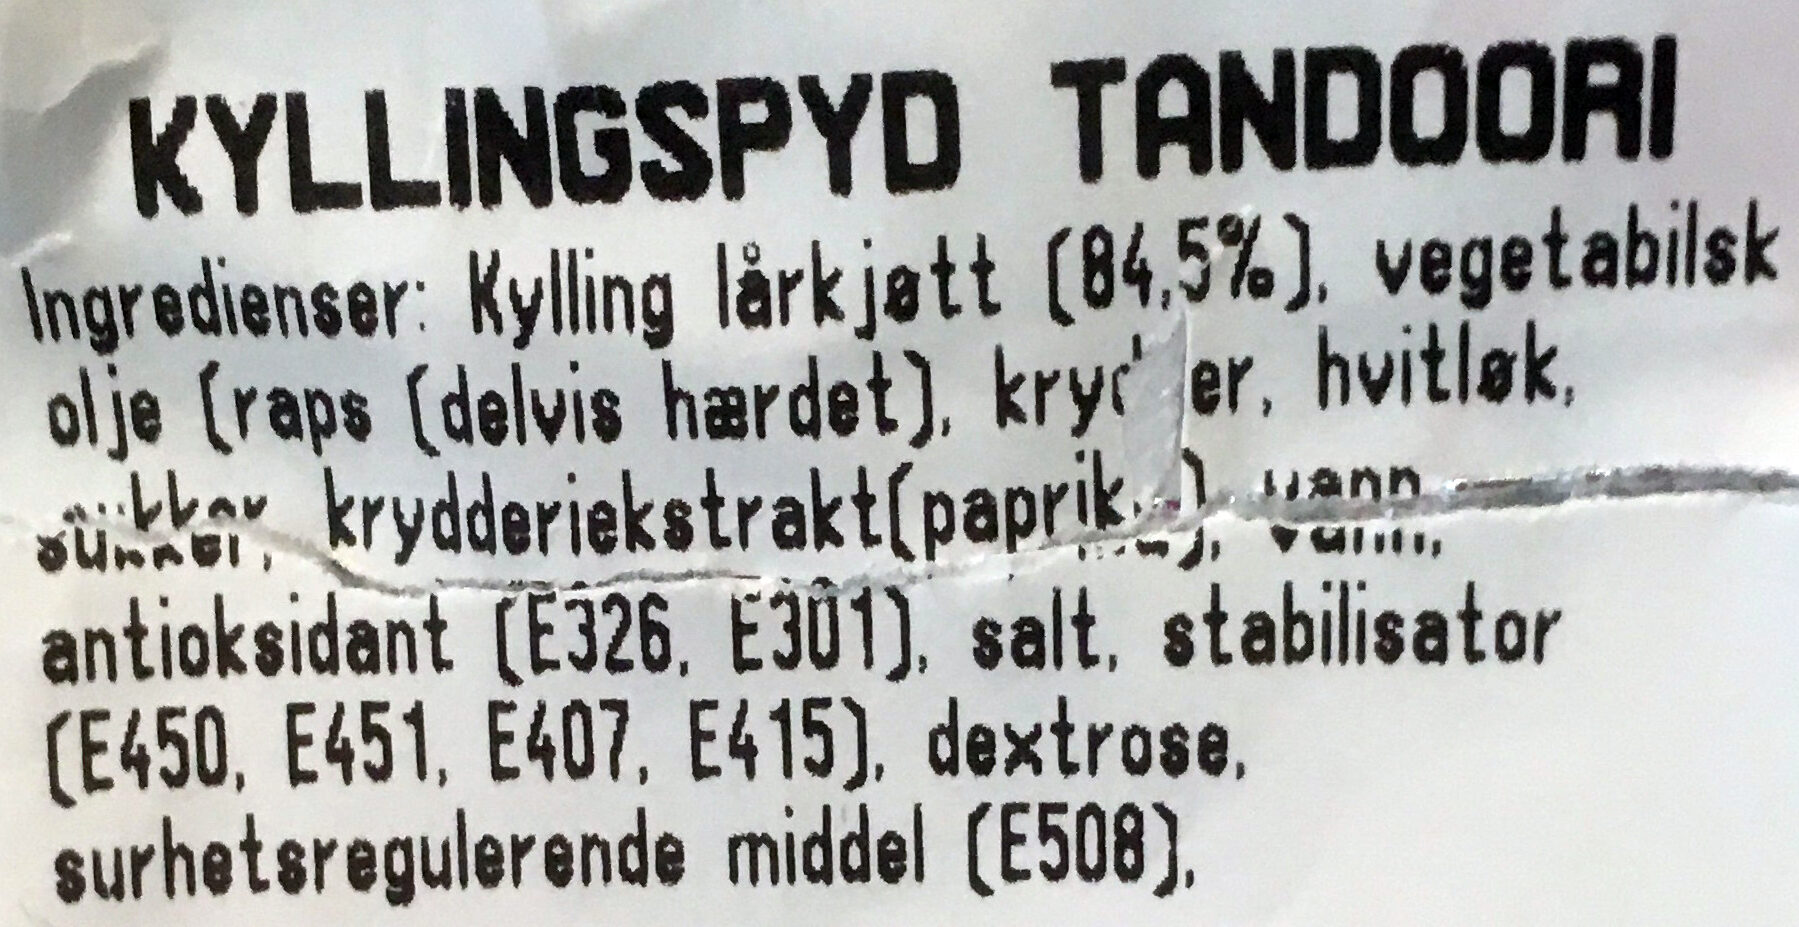 Kyllingspyd Tandori - Ingredienser